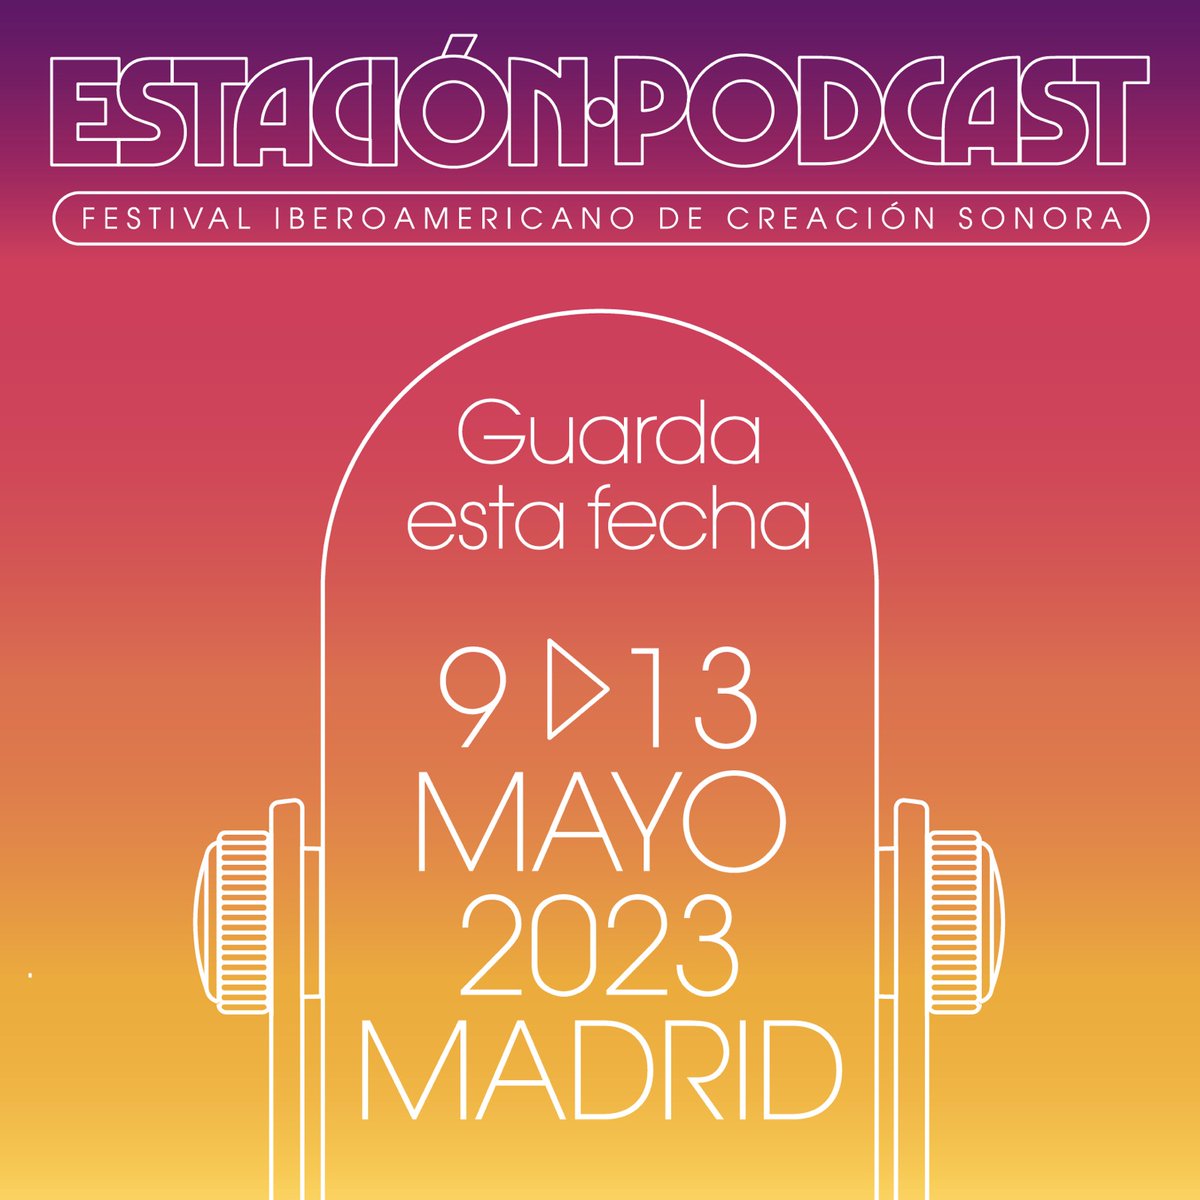 El próximo mayo va a volver a ser histórico: vuelve Estación Podcast, el festival iberoamericano de creación sonora, a Madrid del 09.05.23 al 13.05.23. ¡Apúntalo en tu agenda!
@PodcastEstacion #Madrid #EstacionPodcast #CreacionSonora #Podcast #Podcaster #podcasting